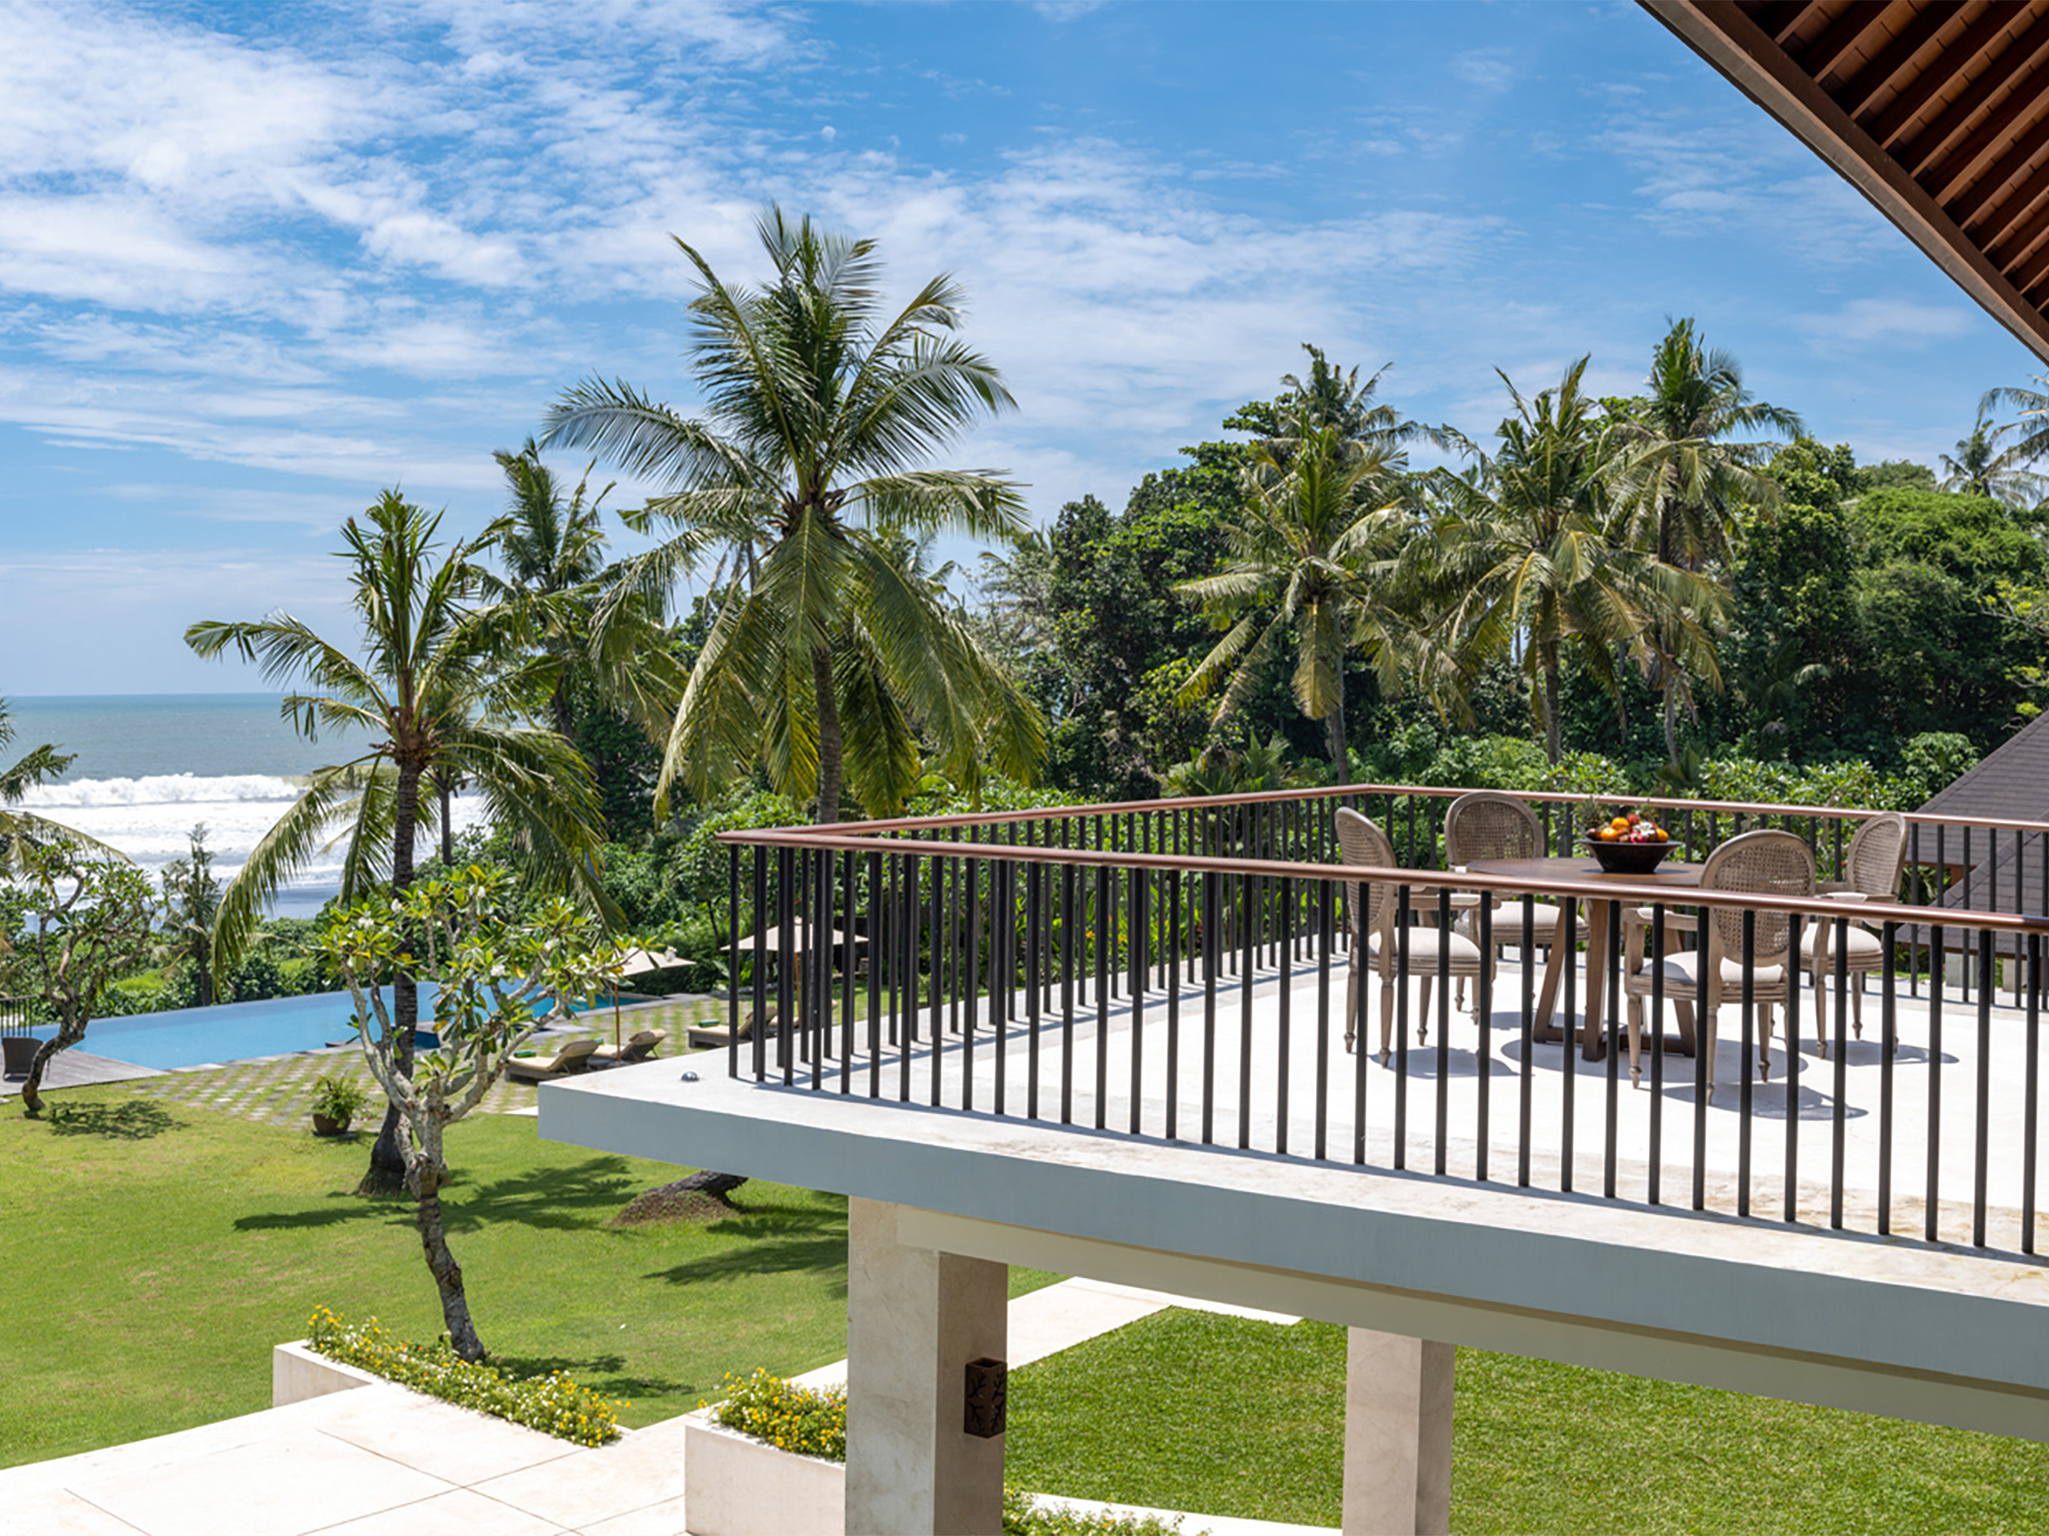 Villa Kailasha - Commanding views from balcony - Villa Kailasha, Tabanan, Bali